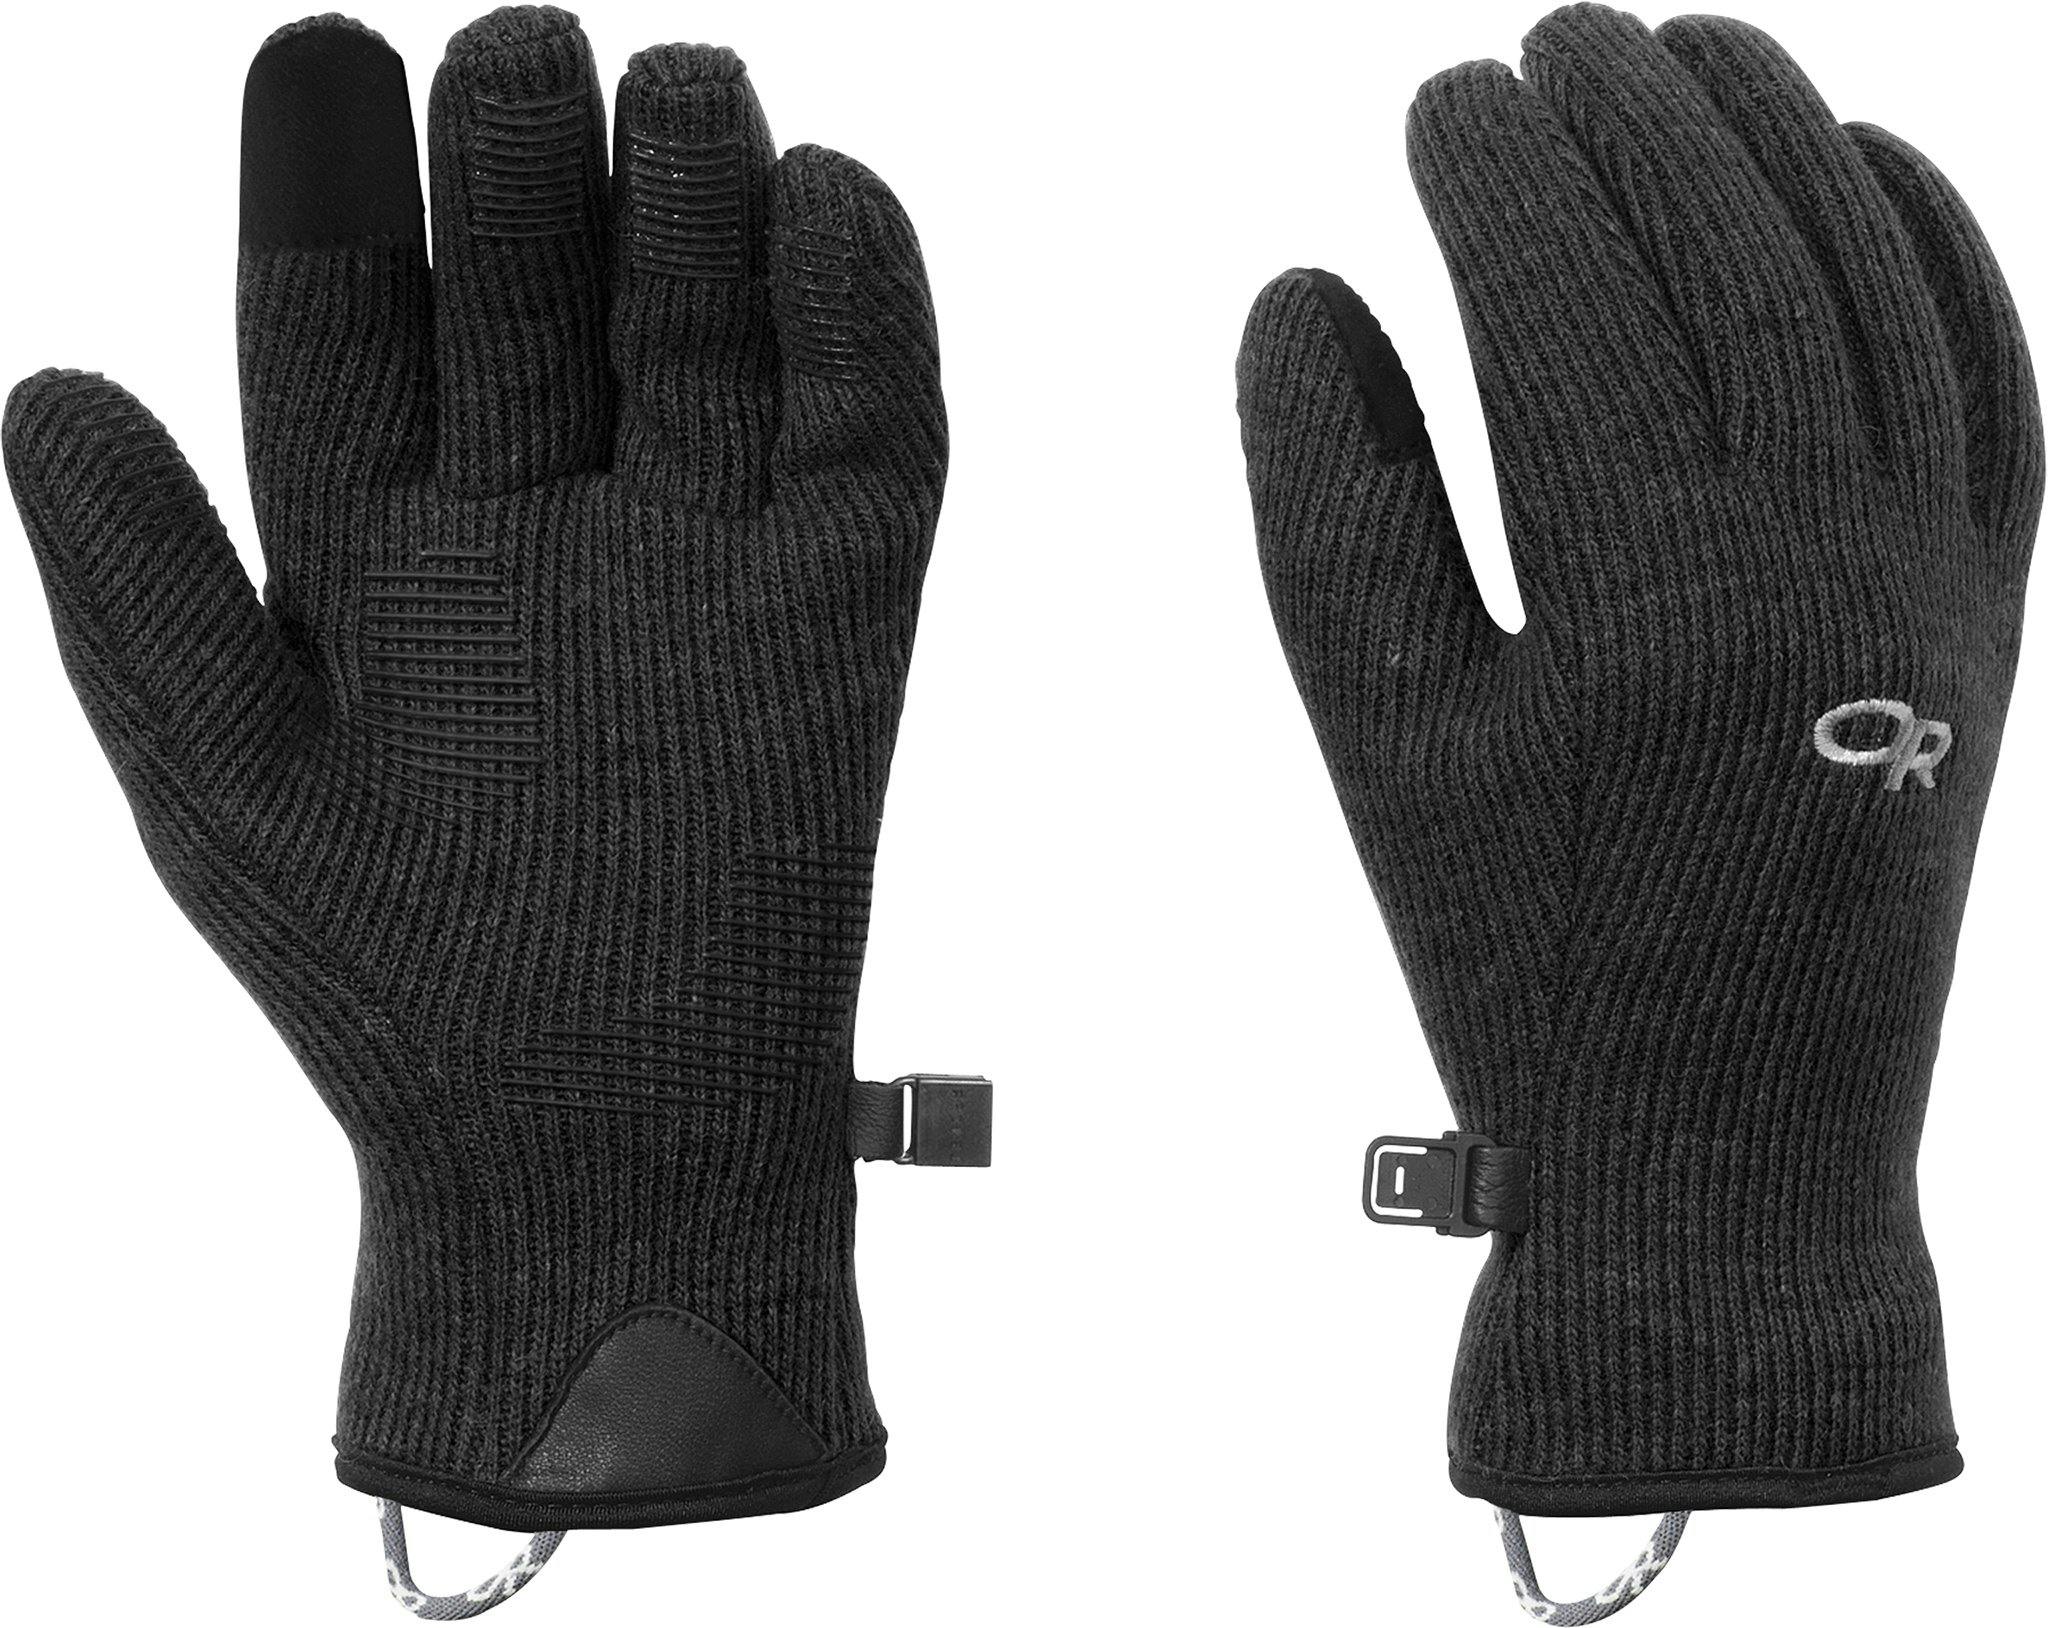 Product image for Flurry Sensor Gloves - Women's